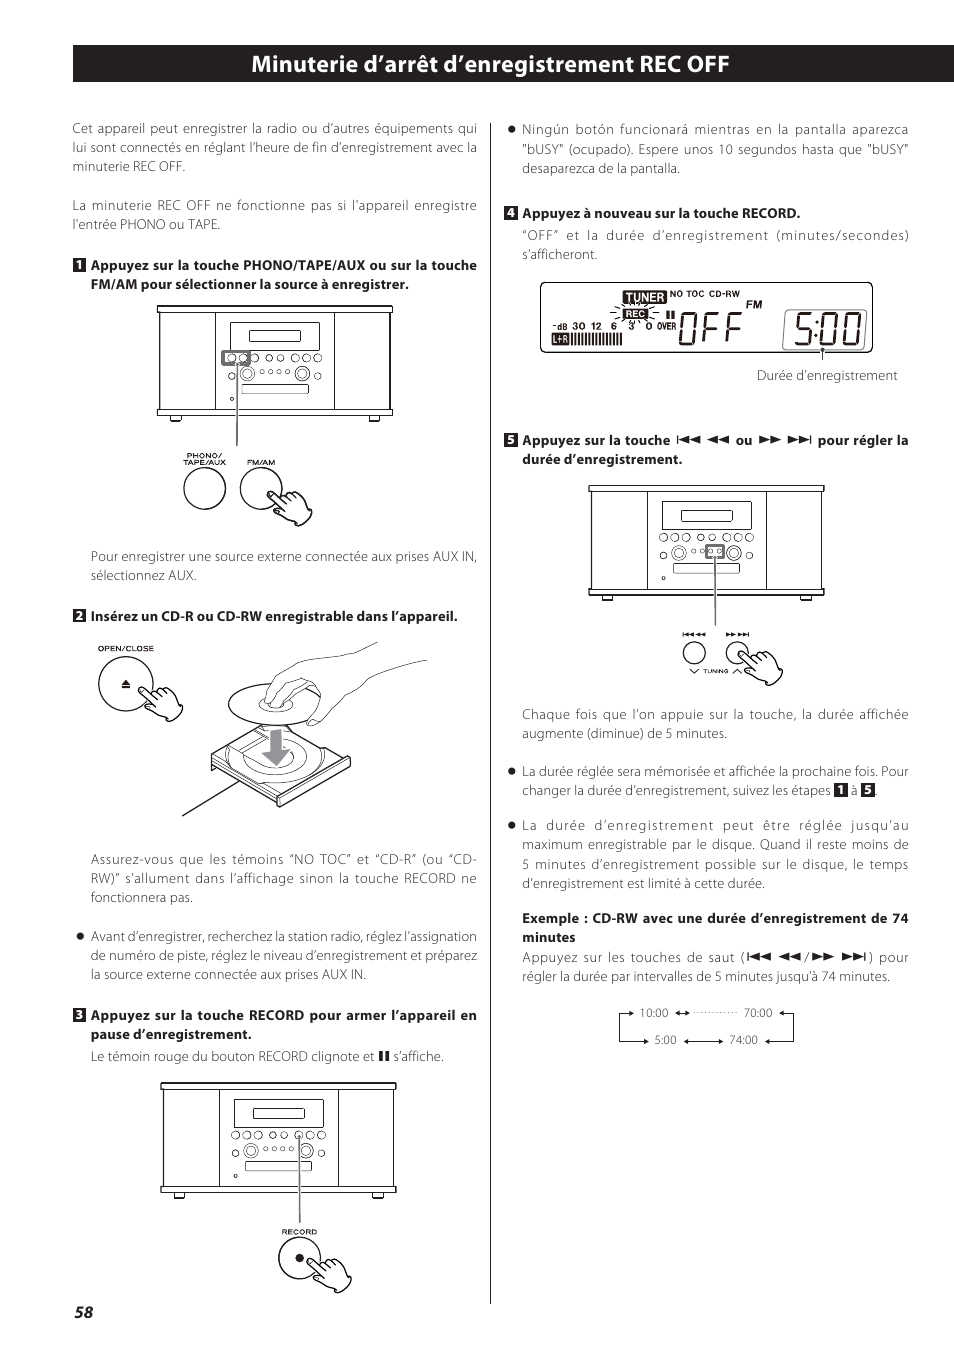 Minuterie d’arrêt d’enregistrement rec off | Teac GF-550 User Manual | Page 58 / 96